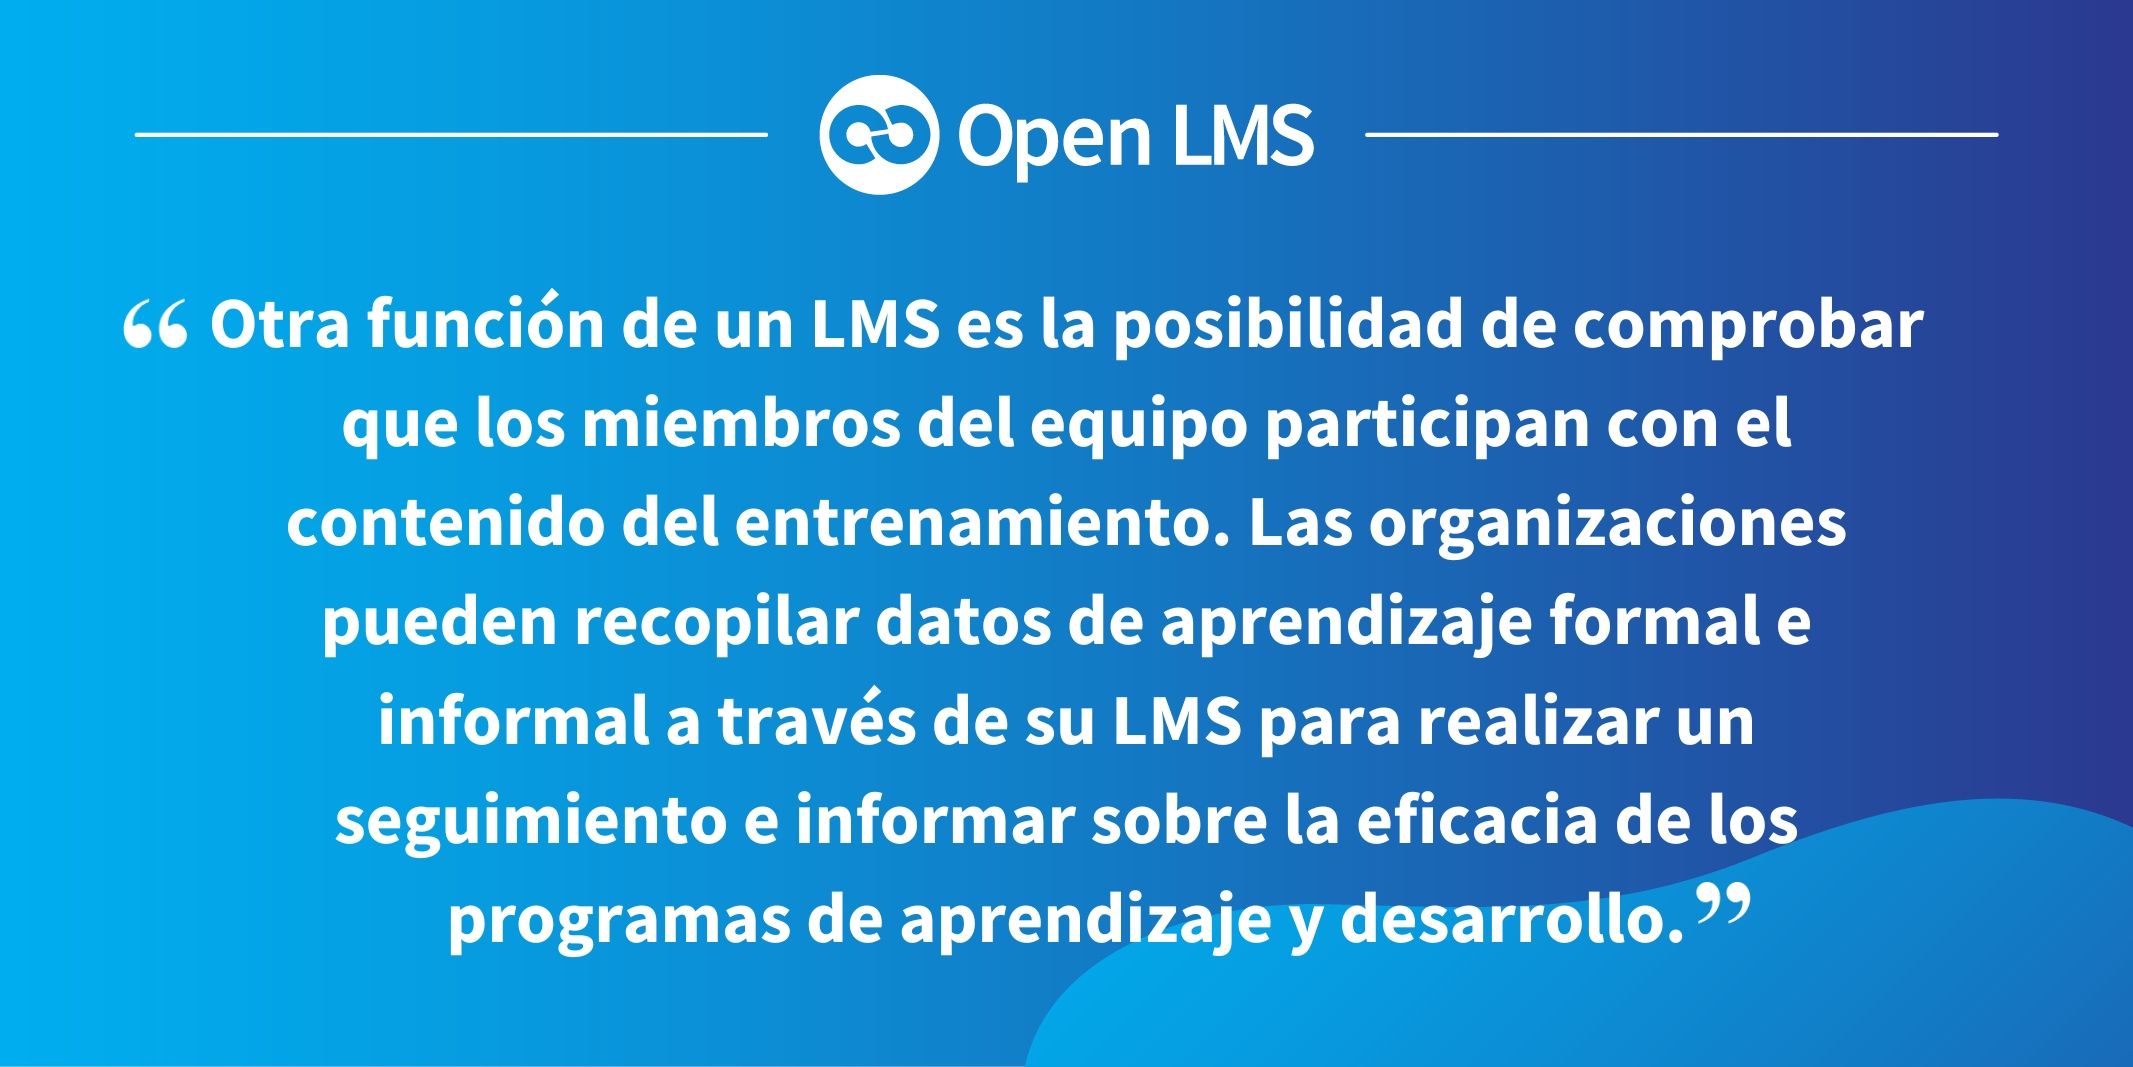 Otra función de un LMS es la posibilidad de comprobar que los miembros del equipo participan con el contenido del entrenamiento. Las organizaciones pueden recopilar datos de aprendizaje formal e informal a través de su LMS para realizar un seguimiento e informar sobre la eficacia de los programas de aprendizaje y desarrollo.